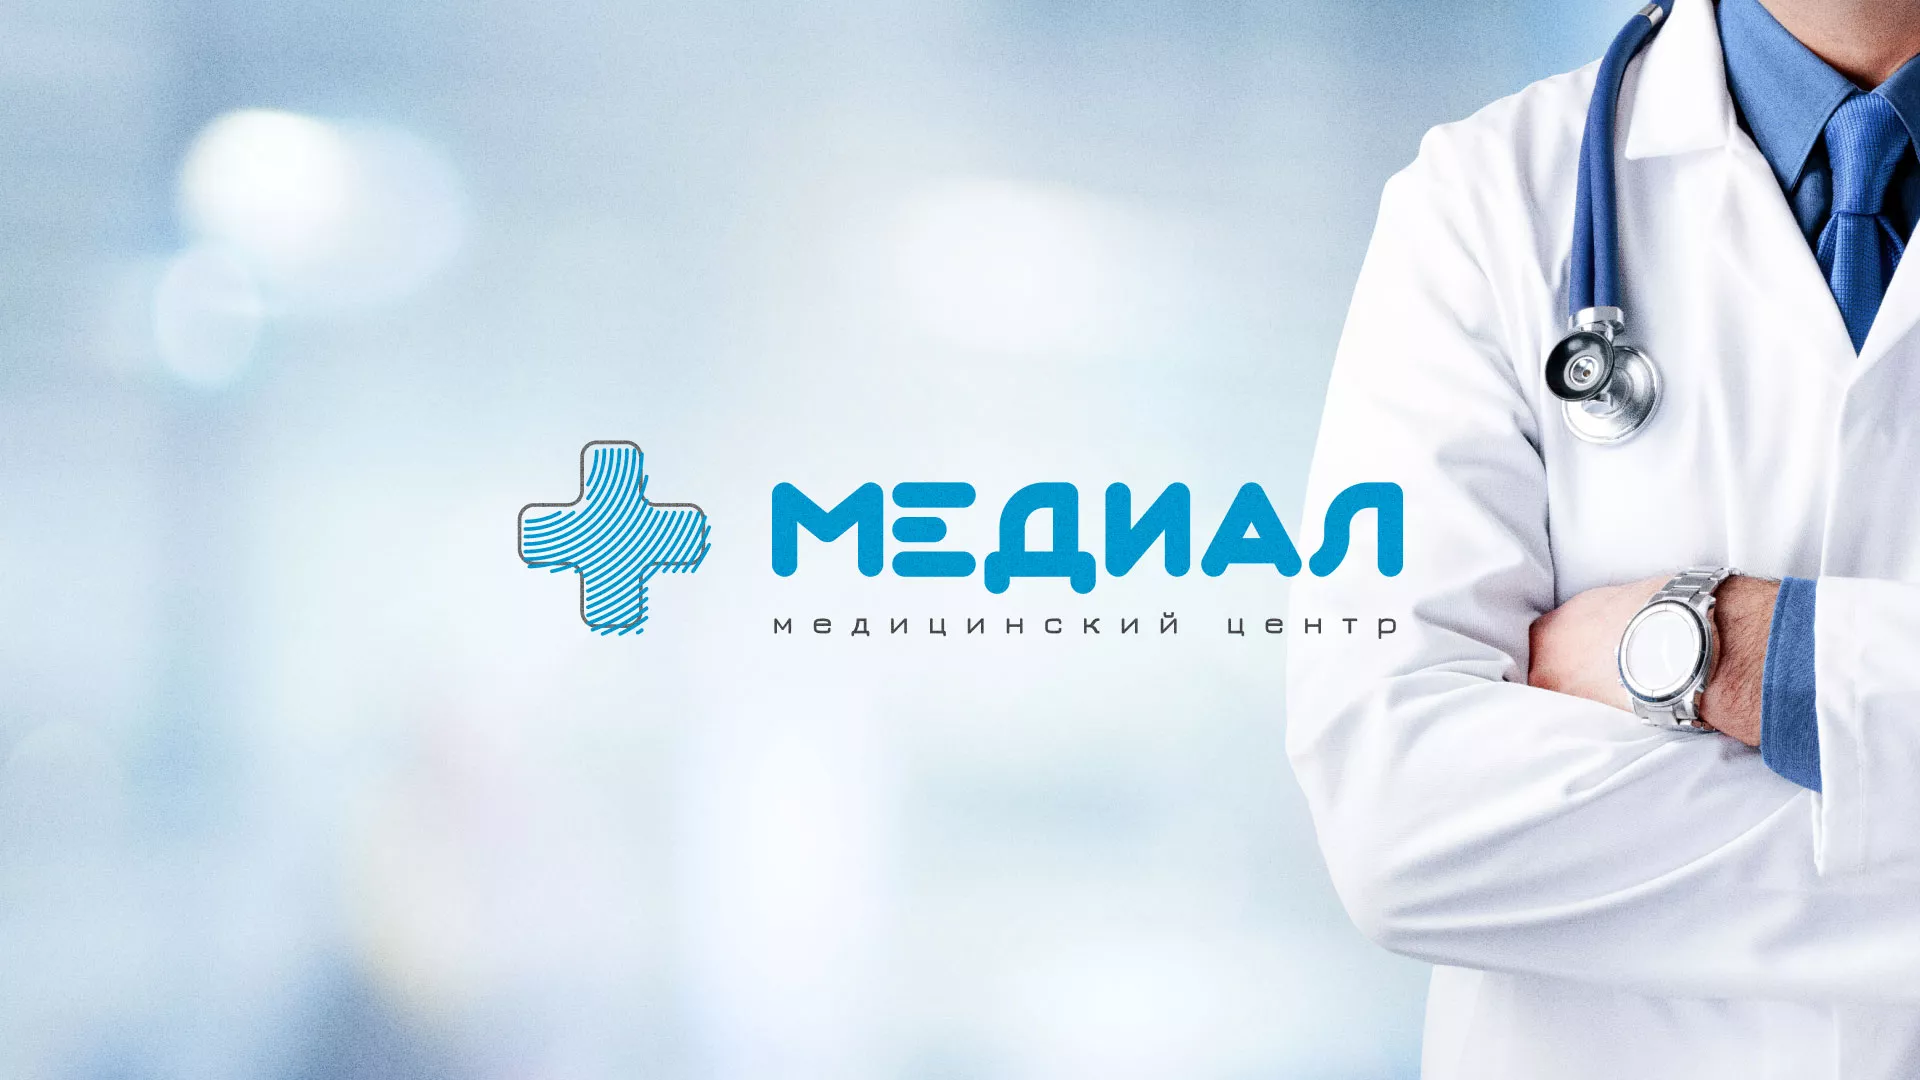 Создание сайта для медицинского центра «Медиал» в Шарье